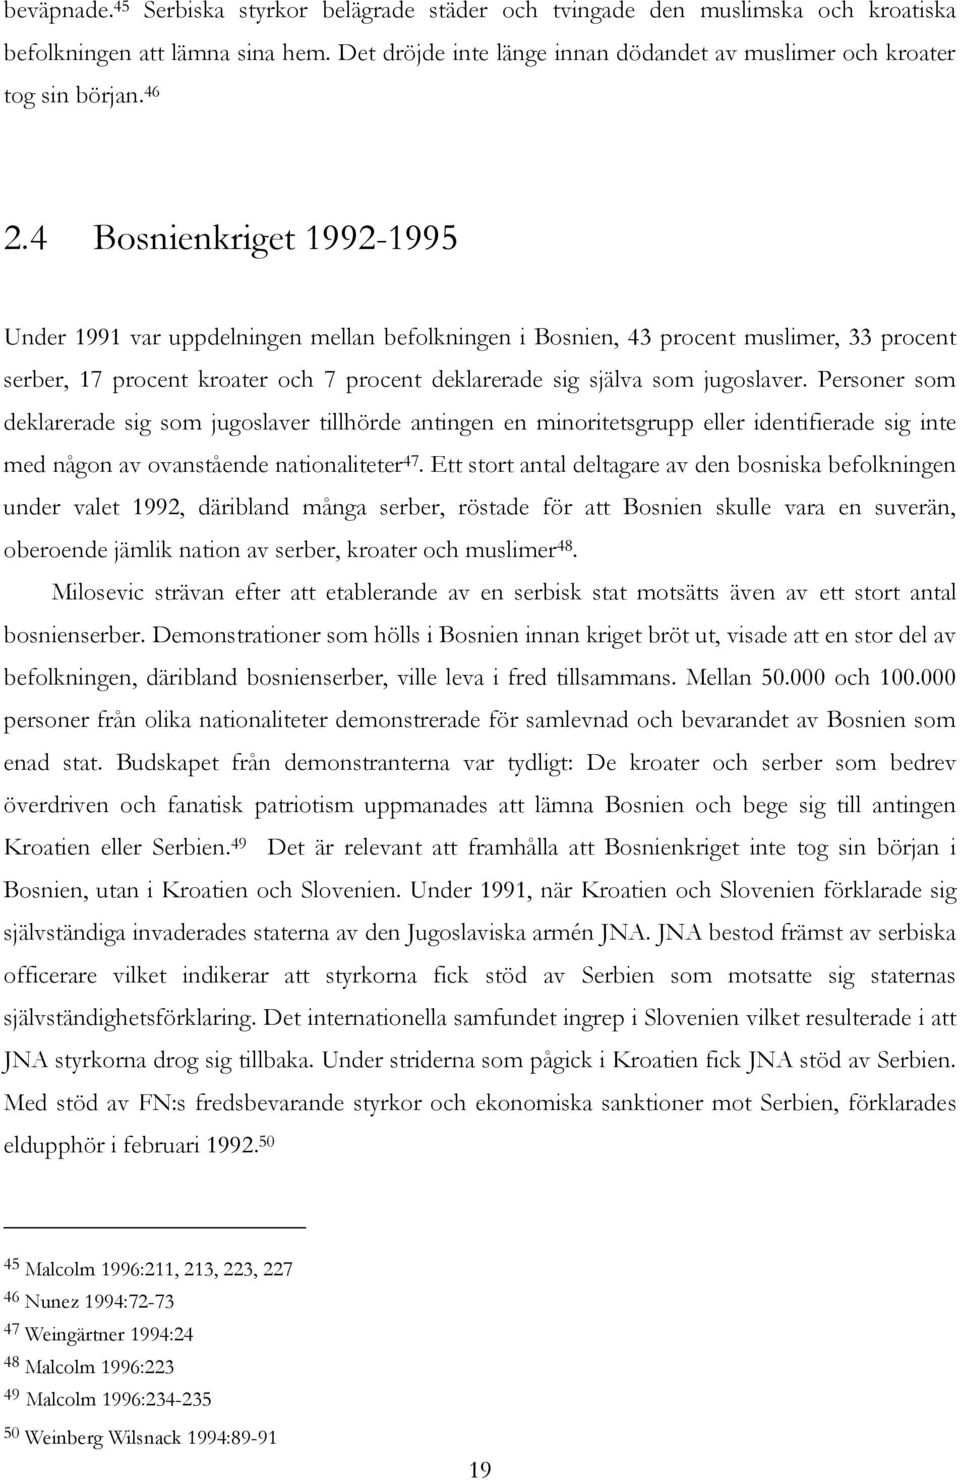 jugoslaver. Personer som deklarerade sig som jugoslaver tillhörde antingen en minoritetsgrupp eller identifierade sig inte med någon av ovanstående nationaliteter 47.